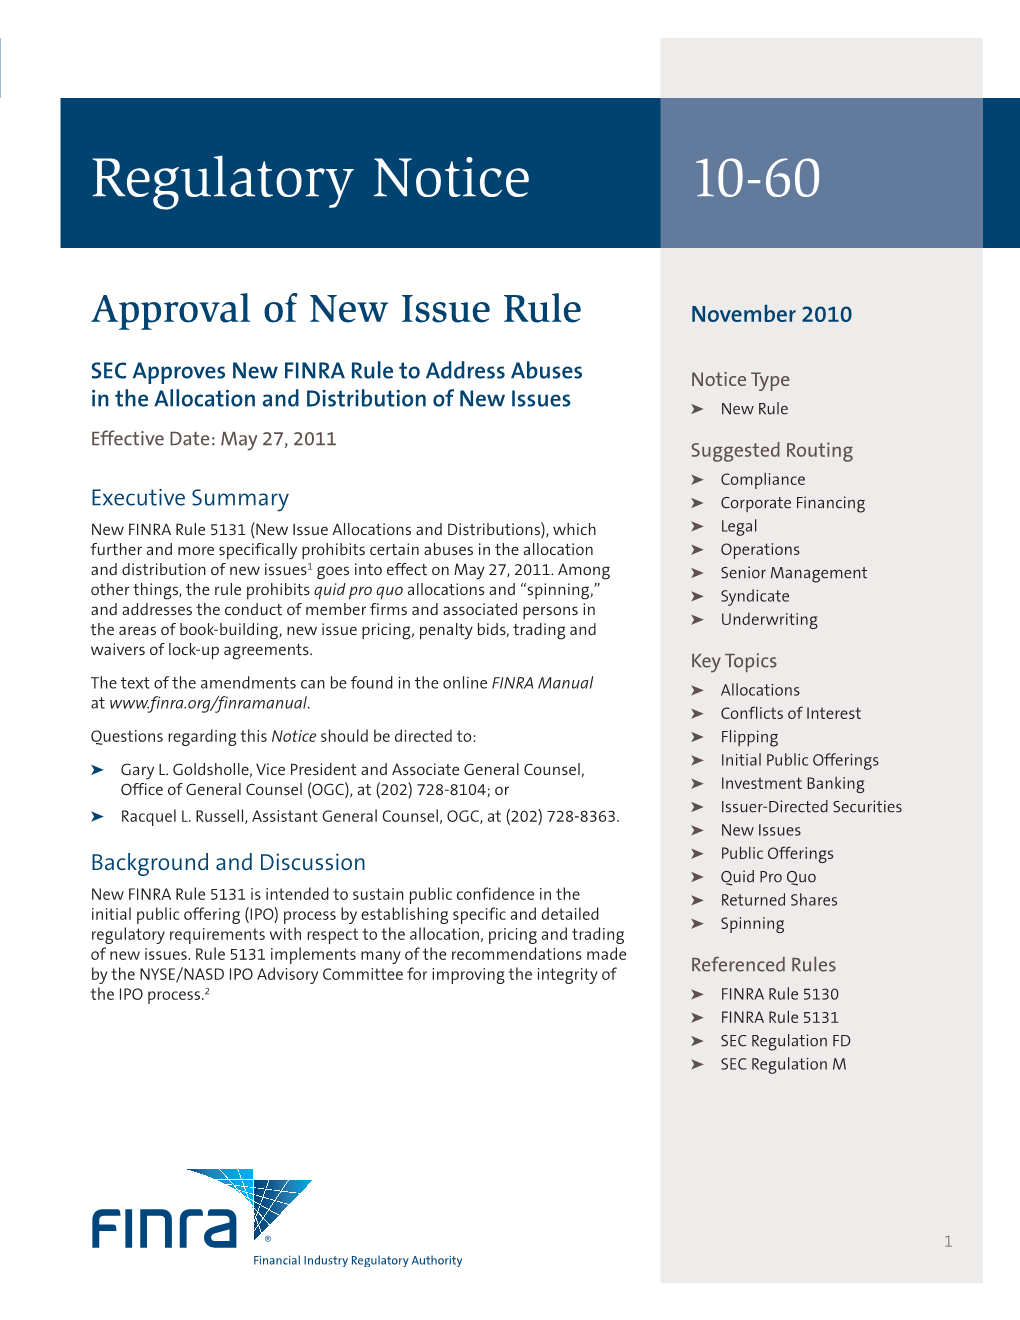 Regulatory Notice 10-60